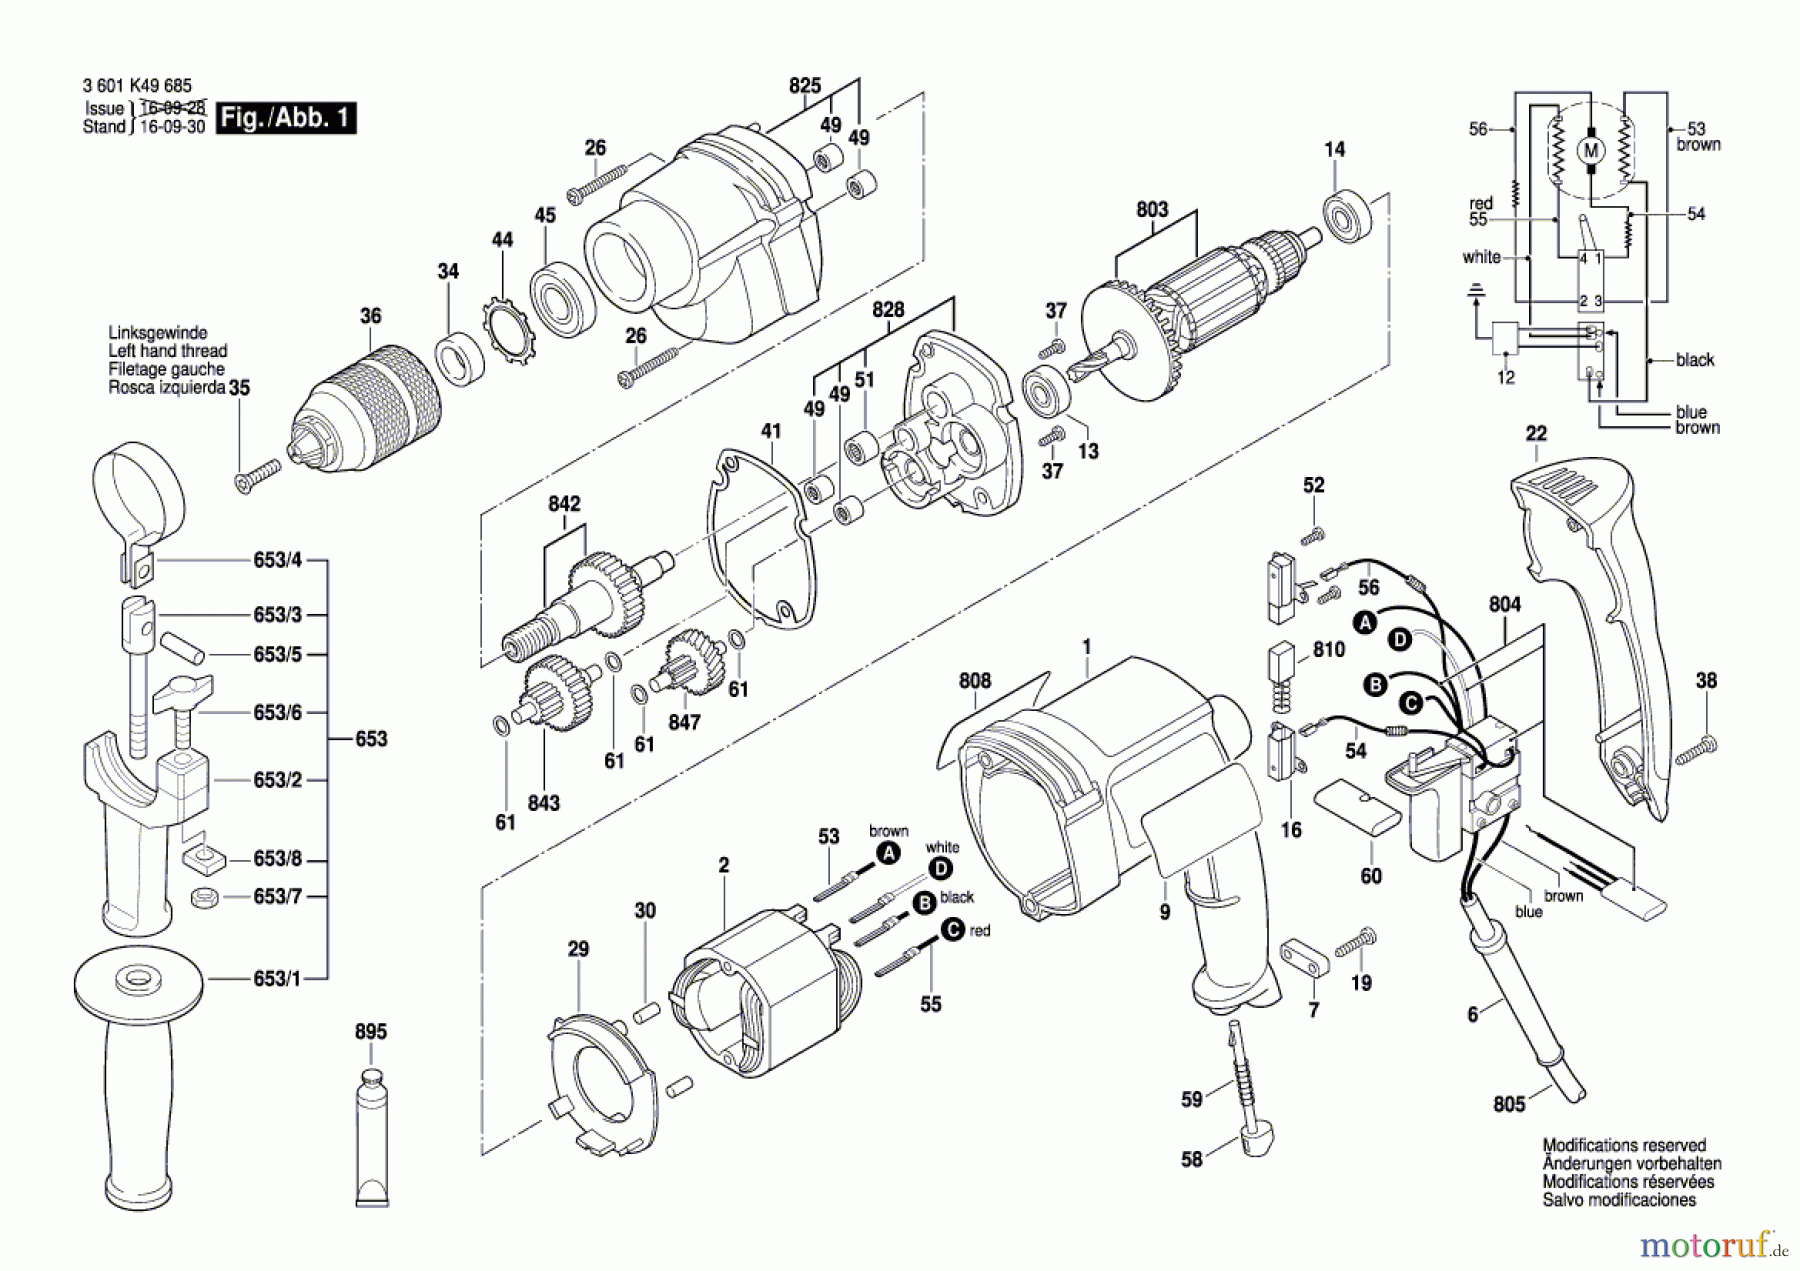  Bosch Werkzeug Bohrmaschine BRD-HT Seite 1